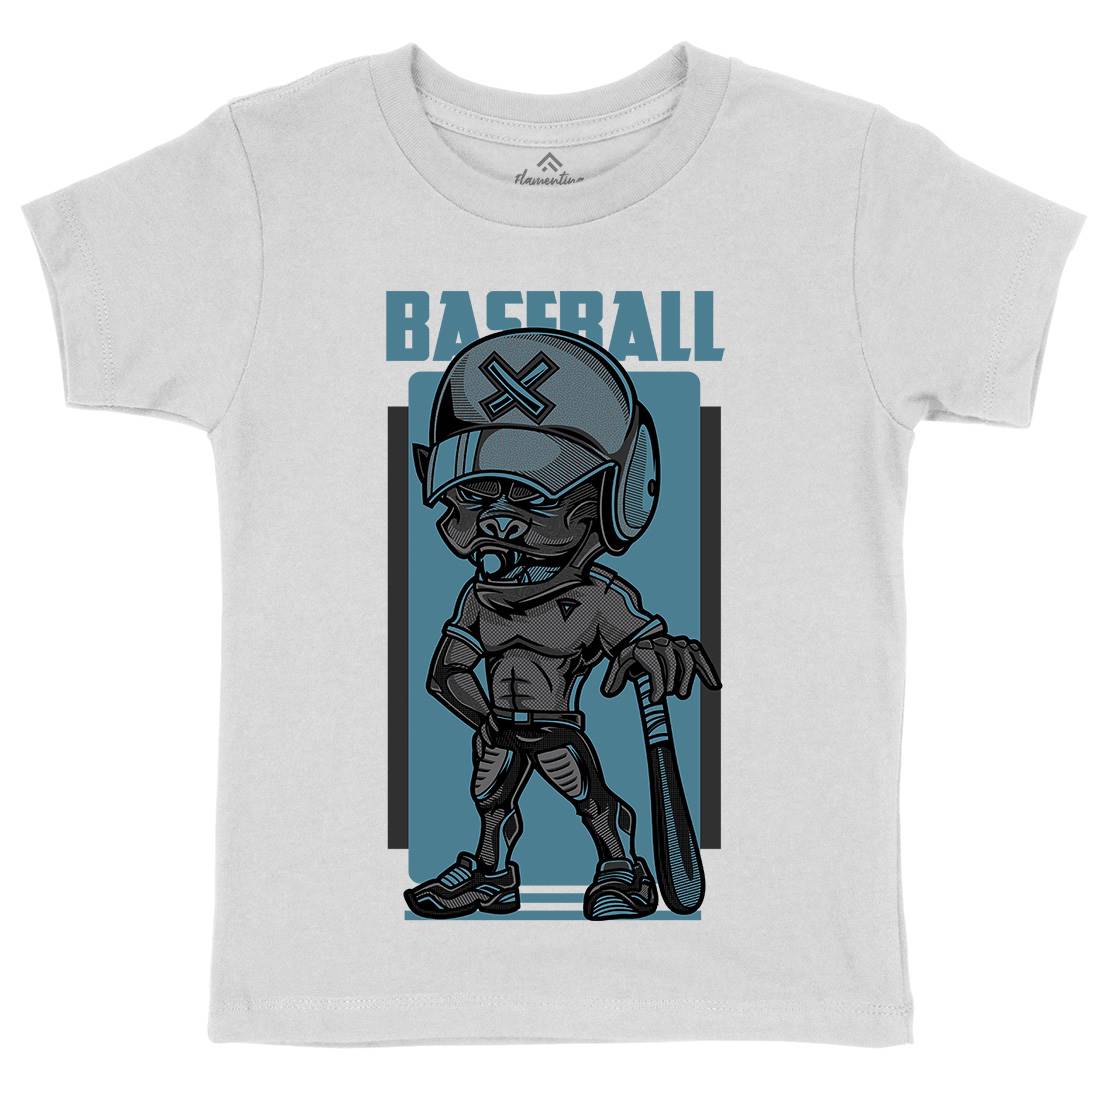 Baseball Kids Organic Crew Neck T-Shirt Sport D710